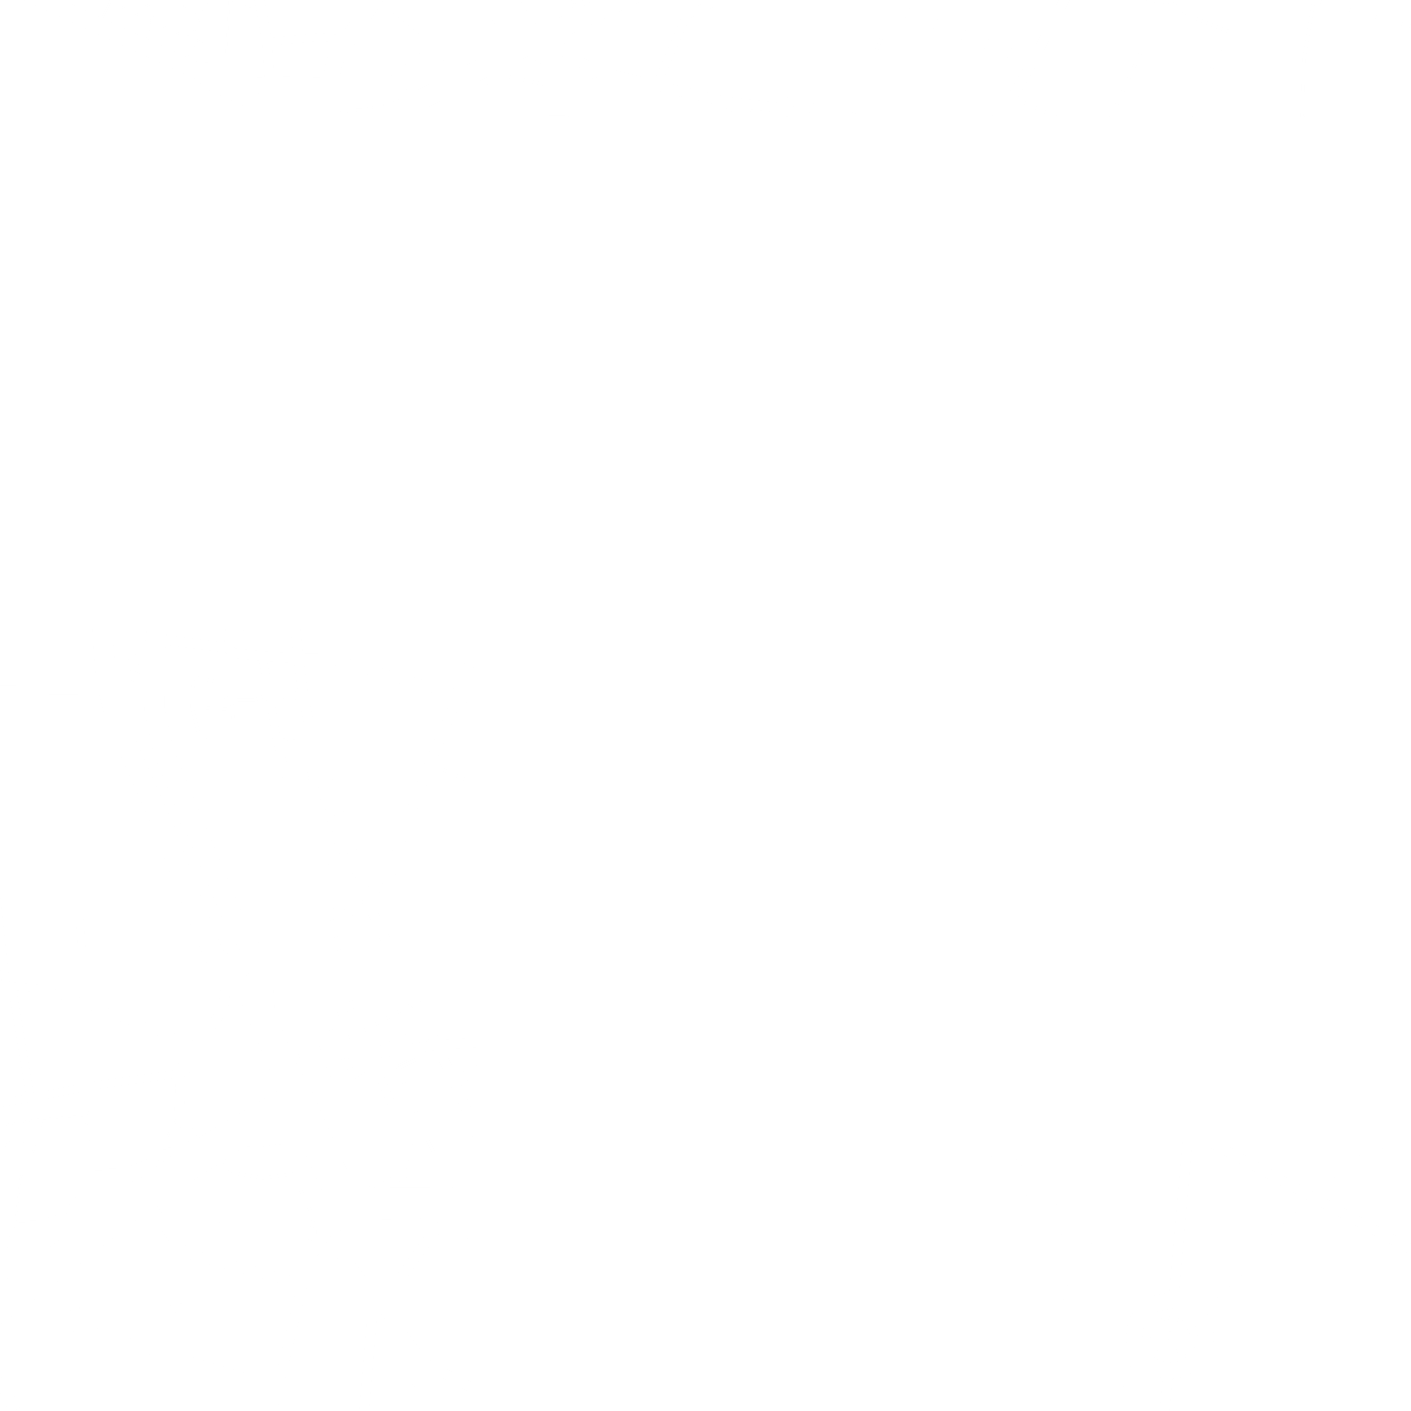 Straßenkarte für Zentrum von München | Gebiet zwischen Sendlinger Tor und Marienplatz